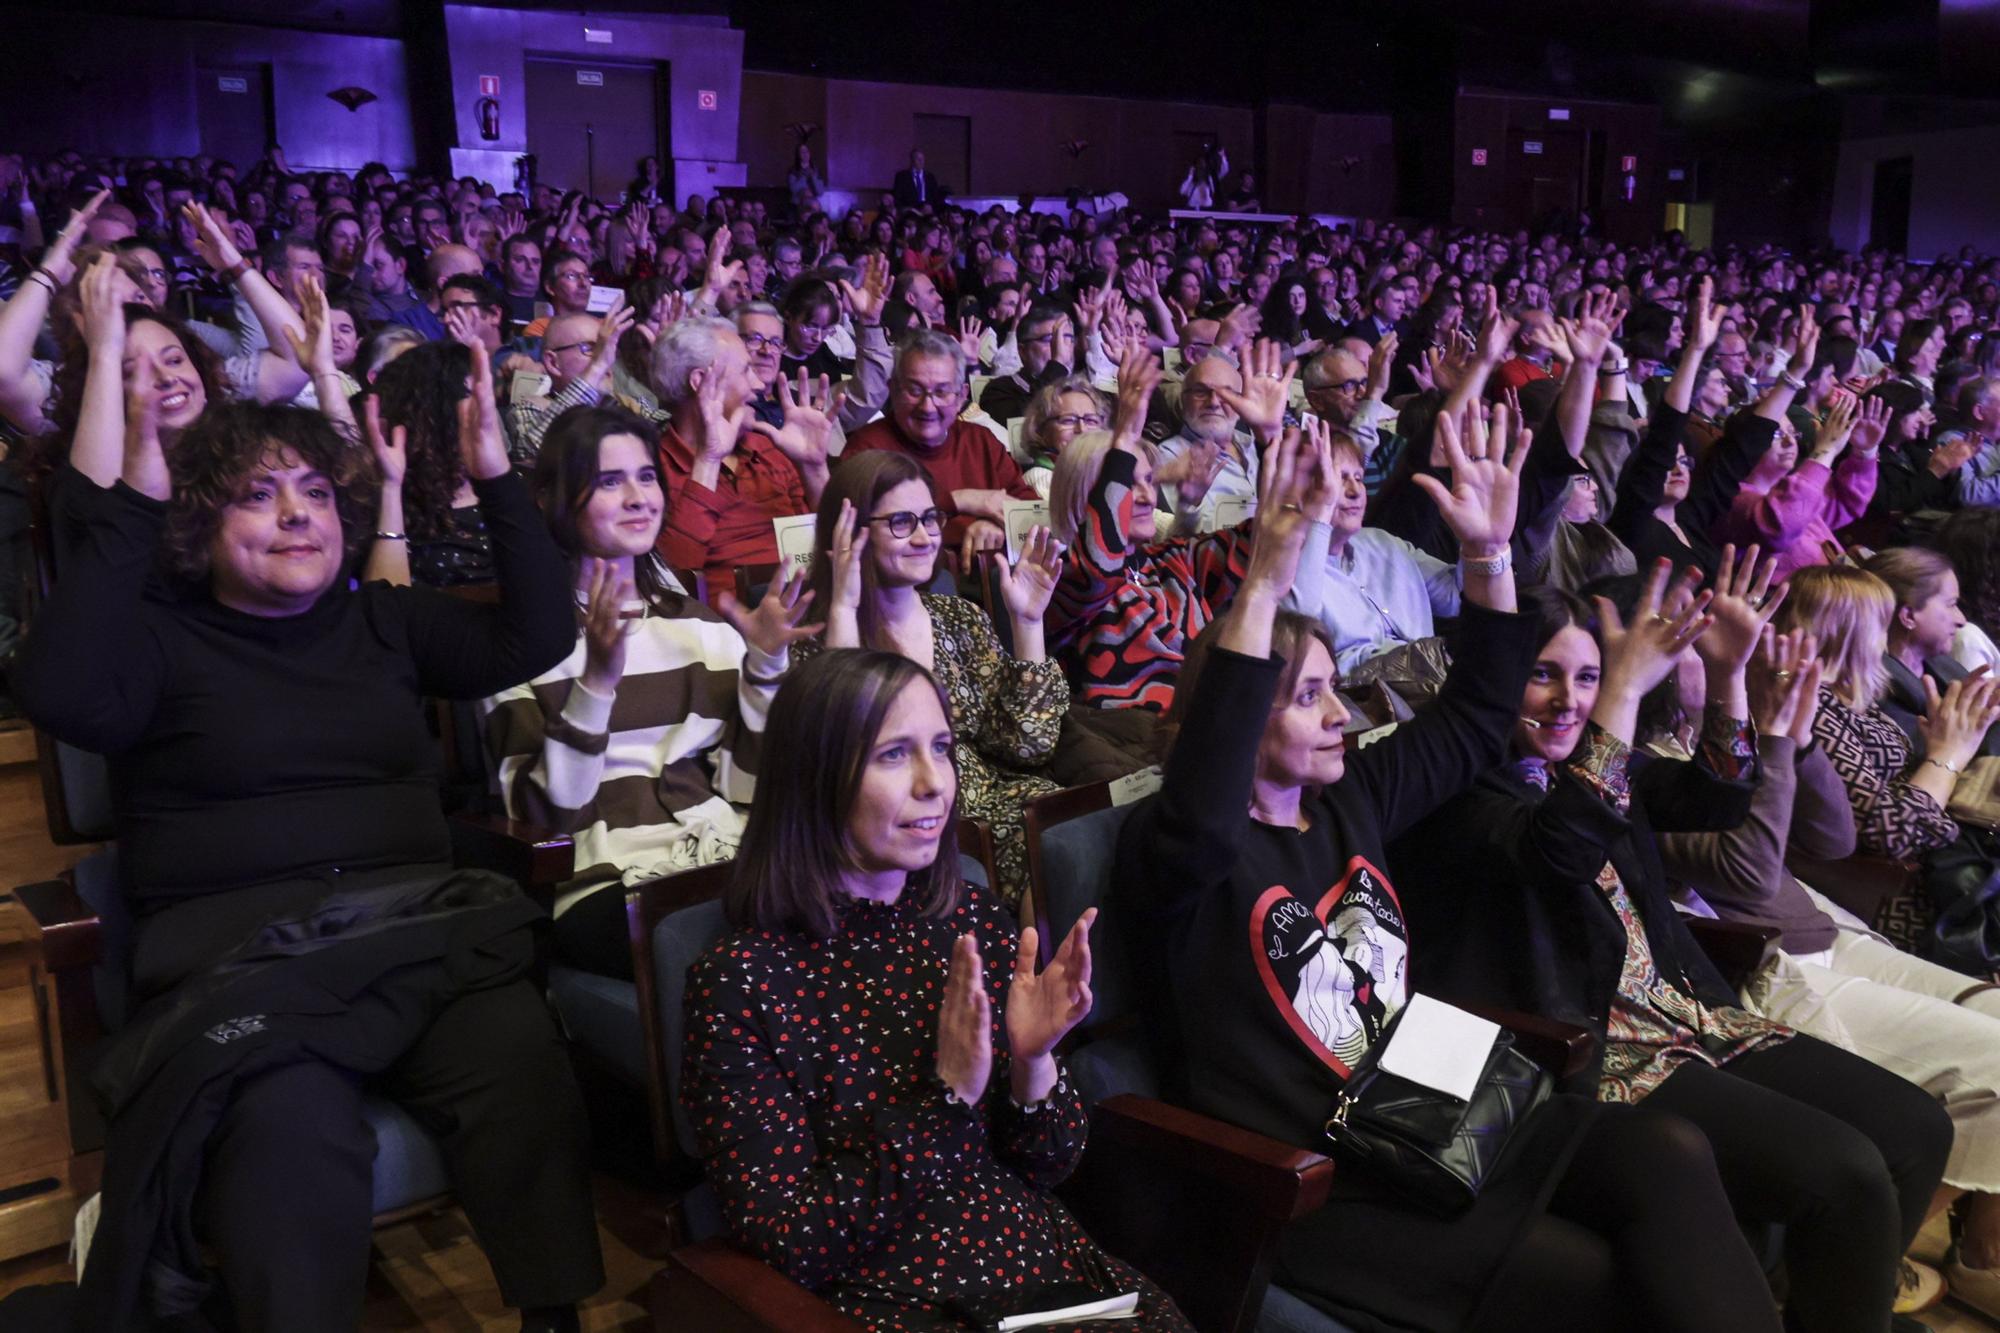 EN IMÁGENES: La Fundación Vinjoy celebra un siglo de milagro social con 1.300 abrazos